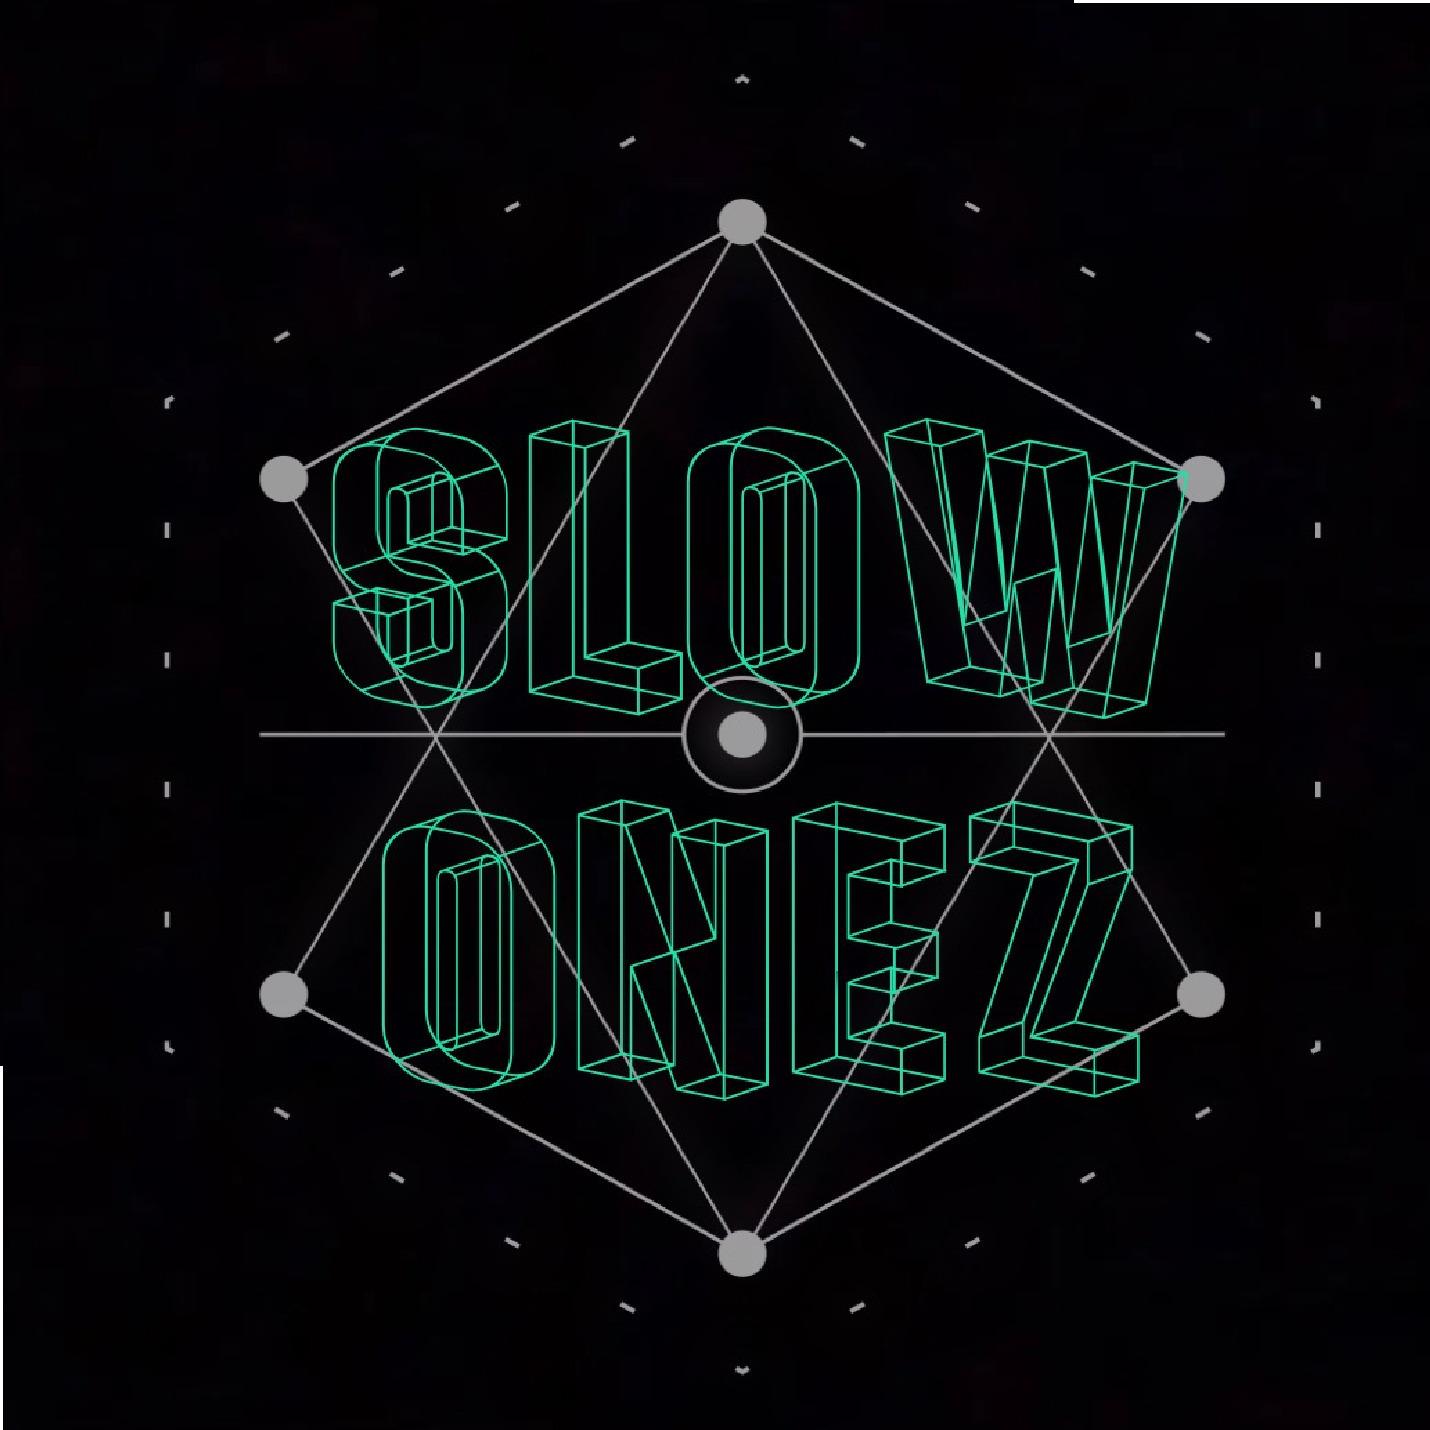 Slow Onez